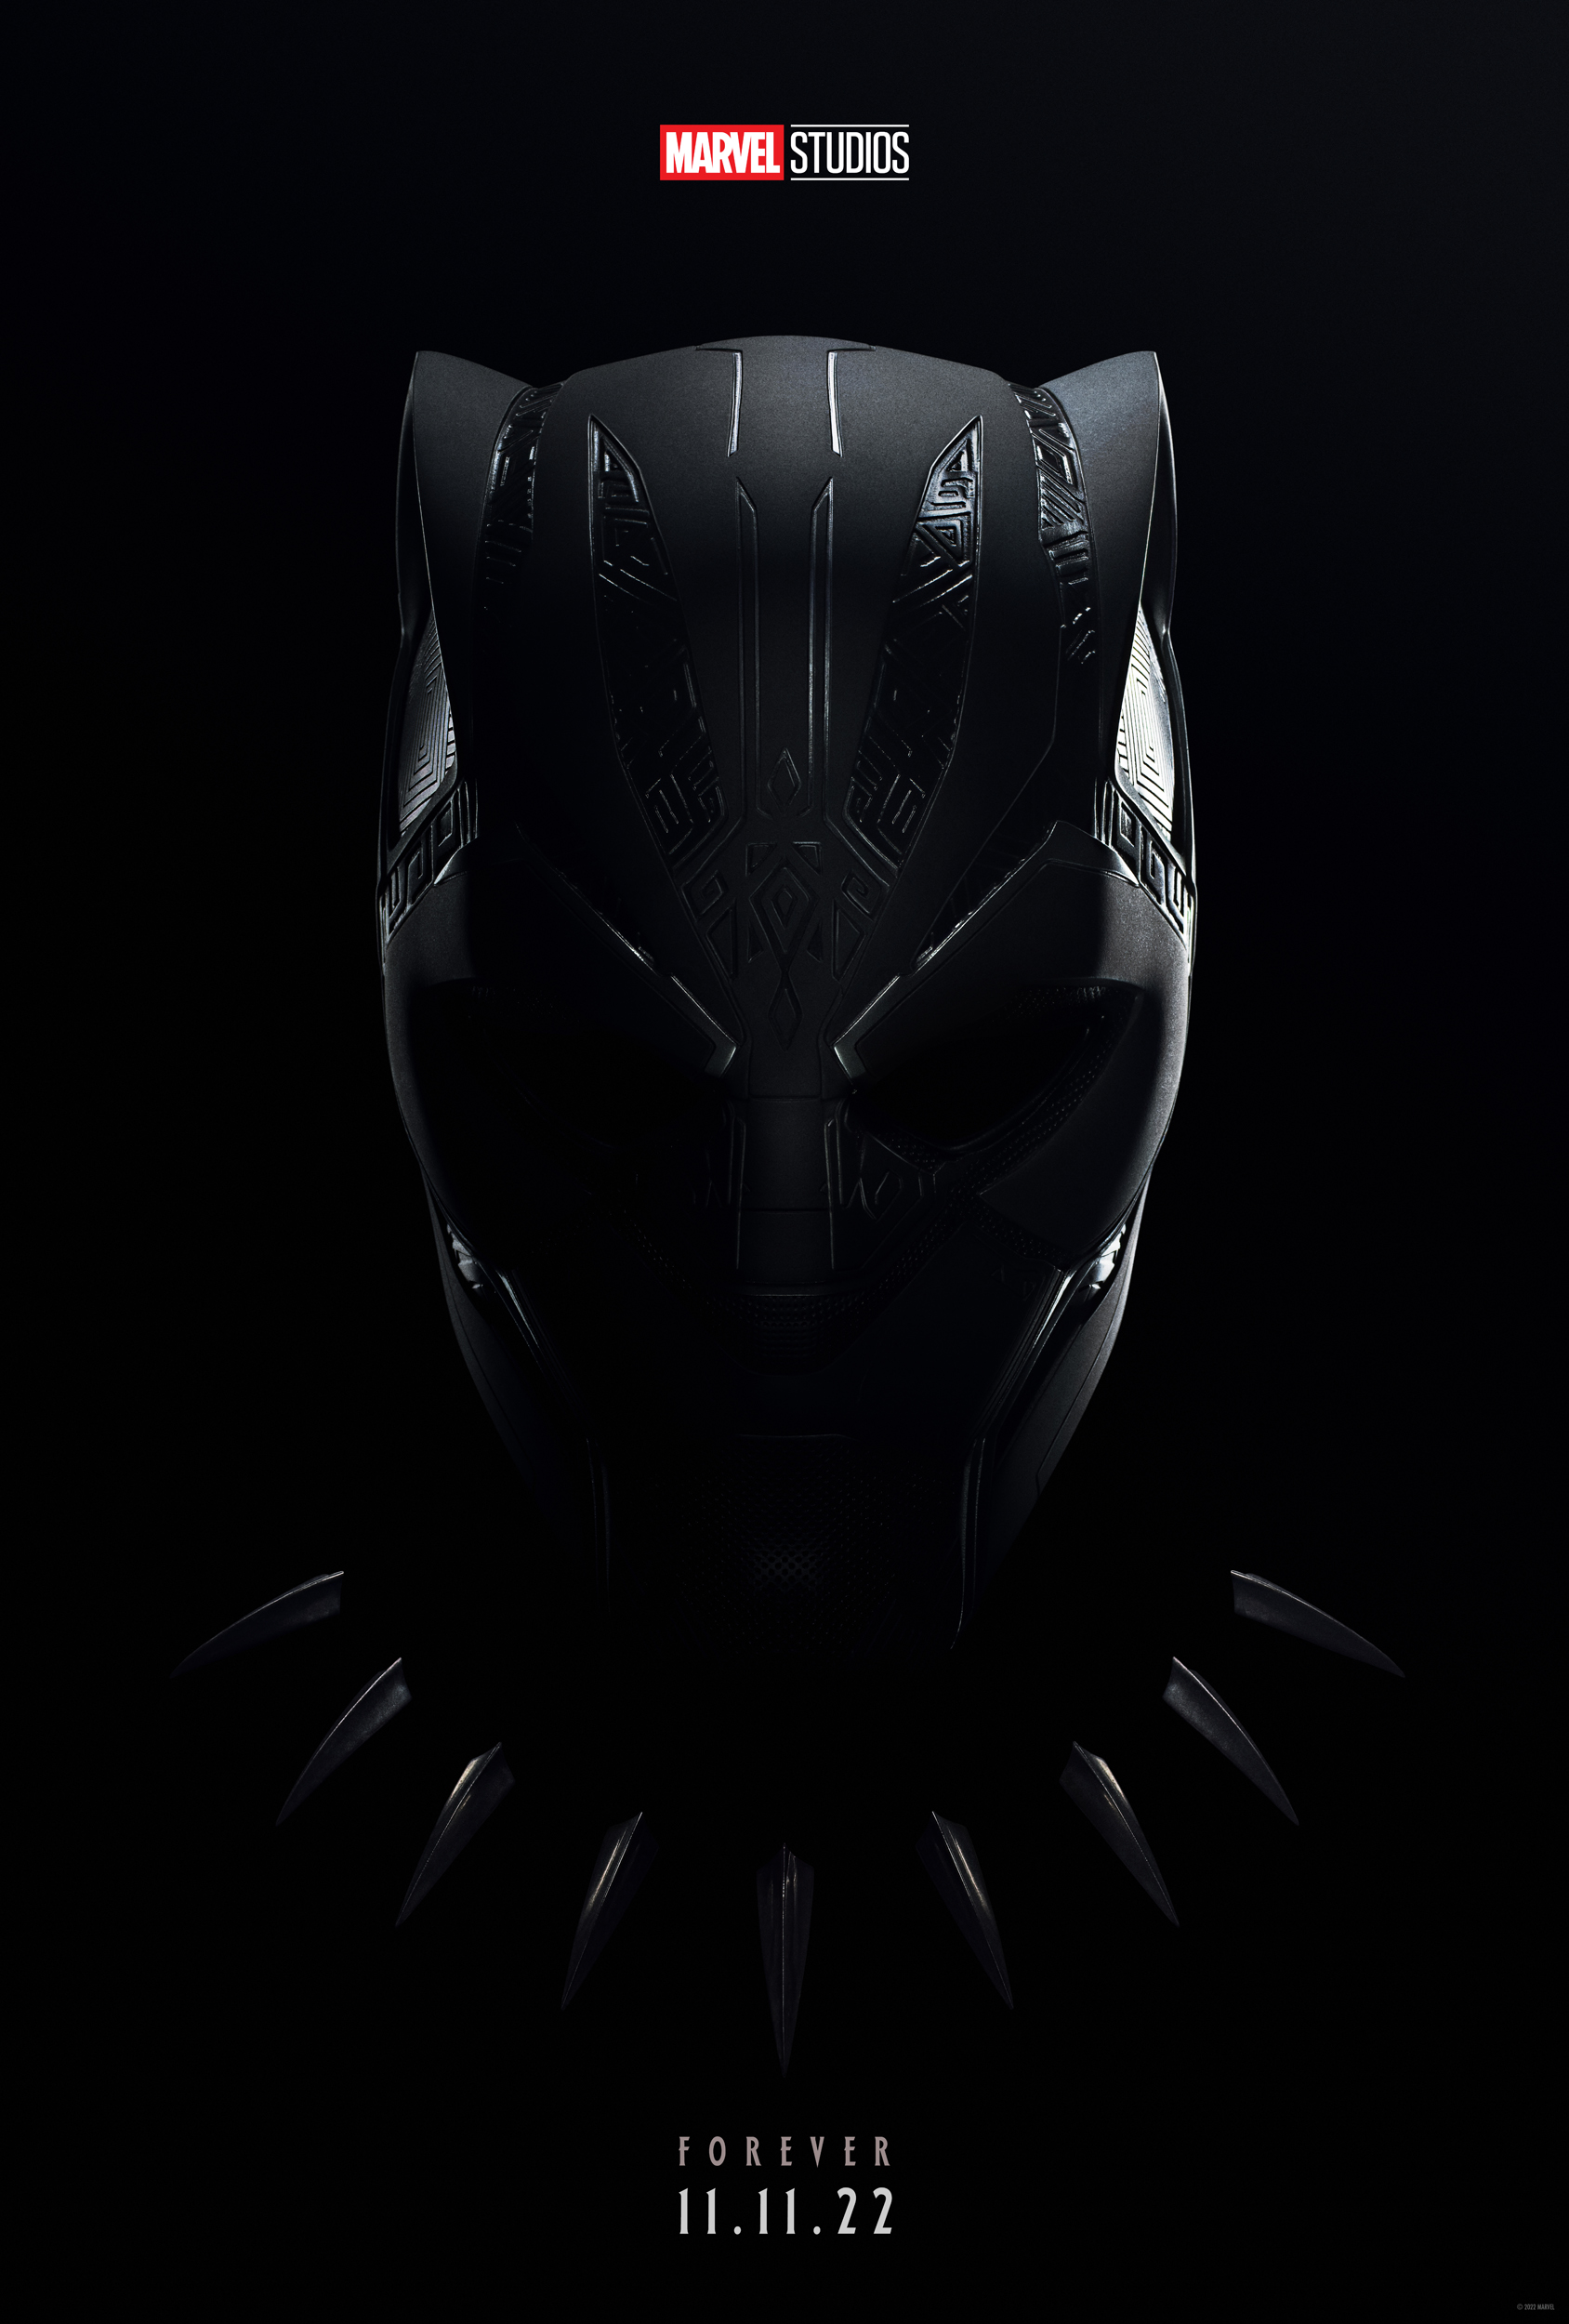 Resmi Rilis Trailer Film Black Panther: Wakanda Forever, Berikut ini 3 Fakta Uniknya